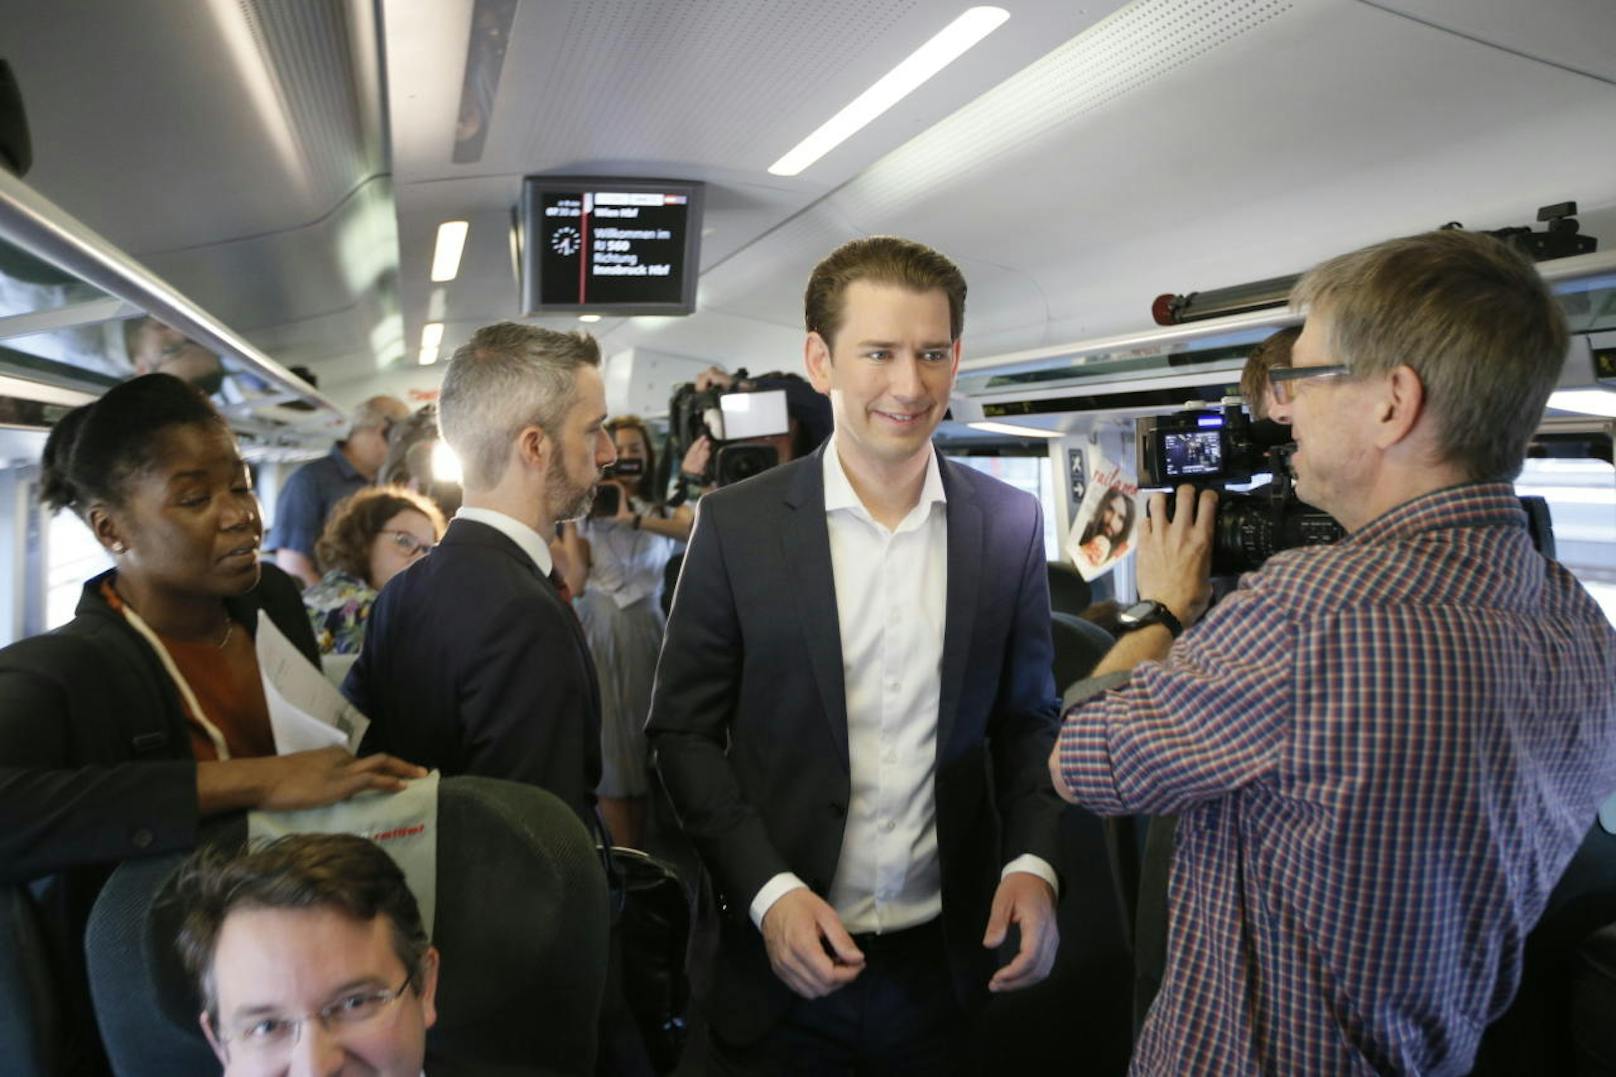 ÖVP-Bundeskanzler Sebastian Kurz reist mit dem Zug zum Treffen mit Bayerns Ministerpräsident Markus Söder (CSU).